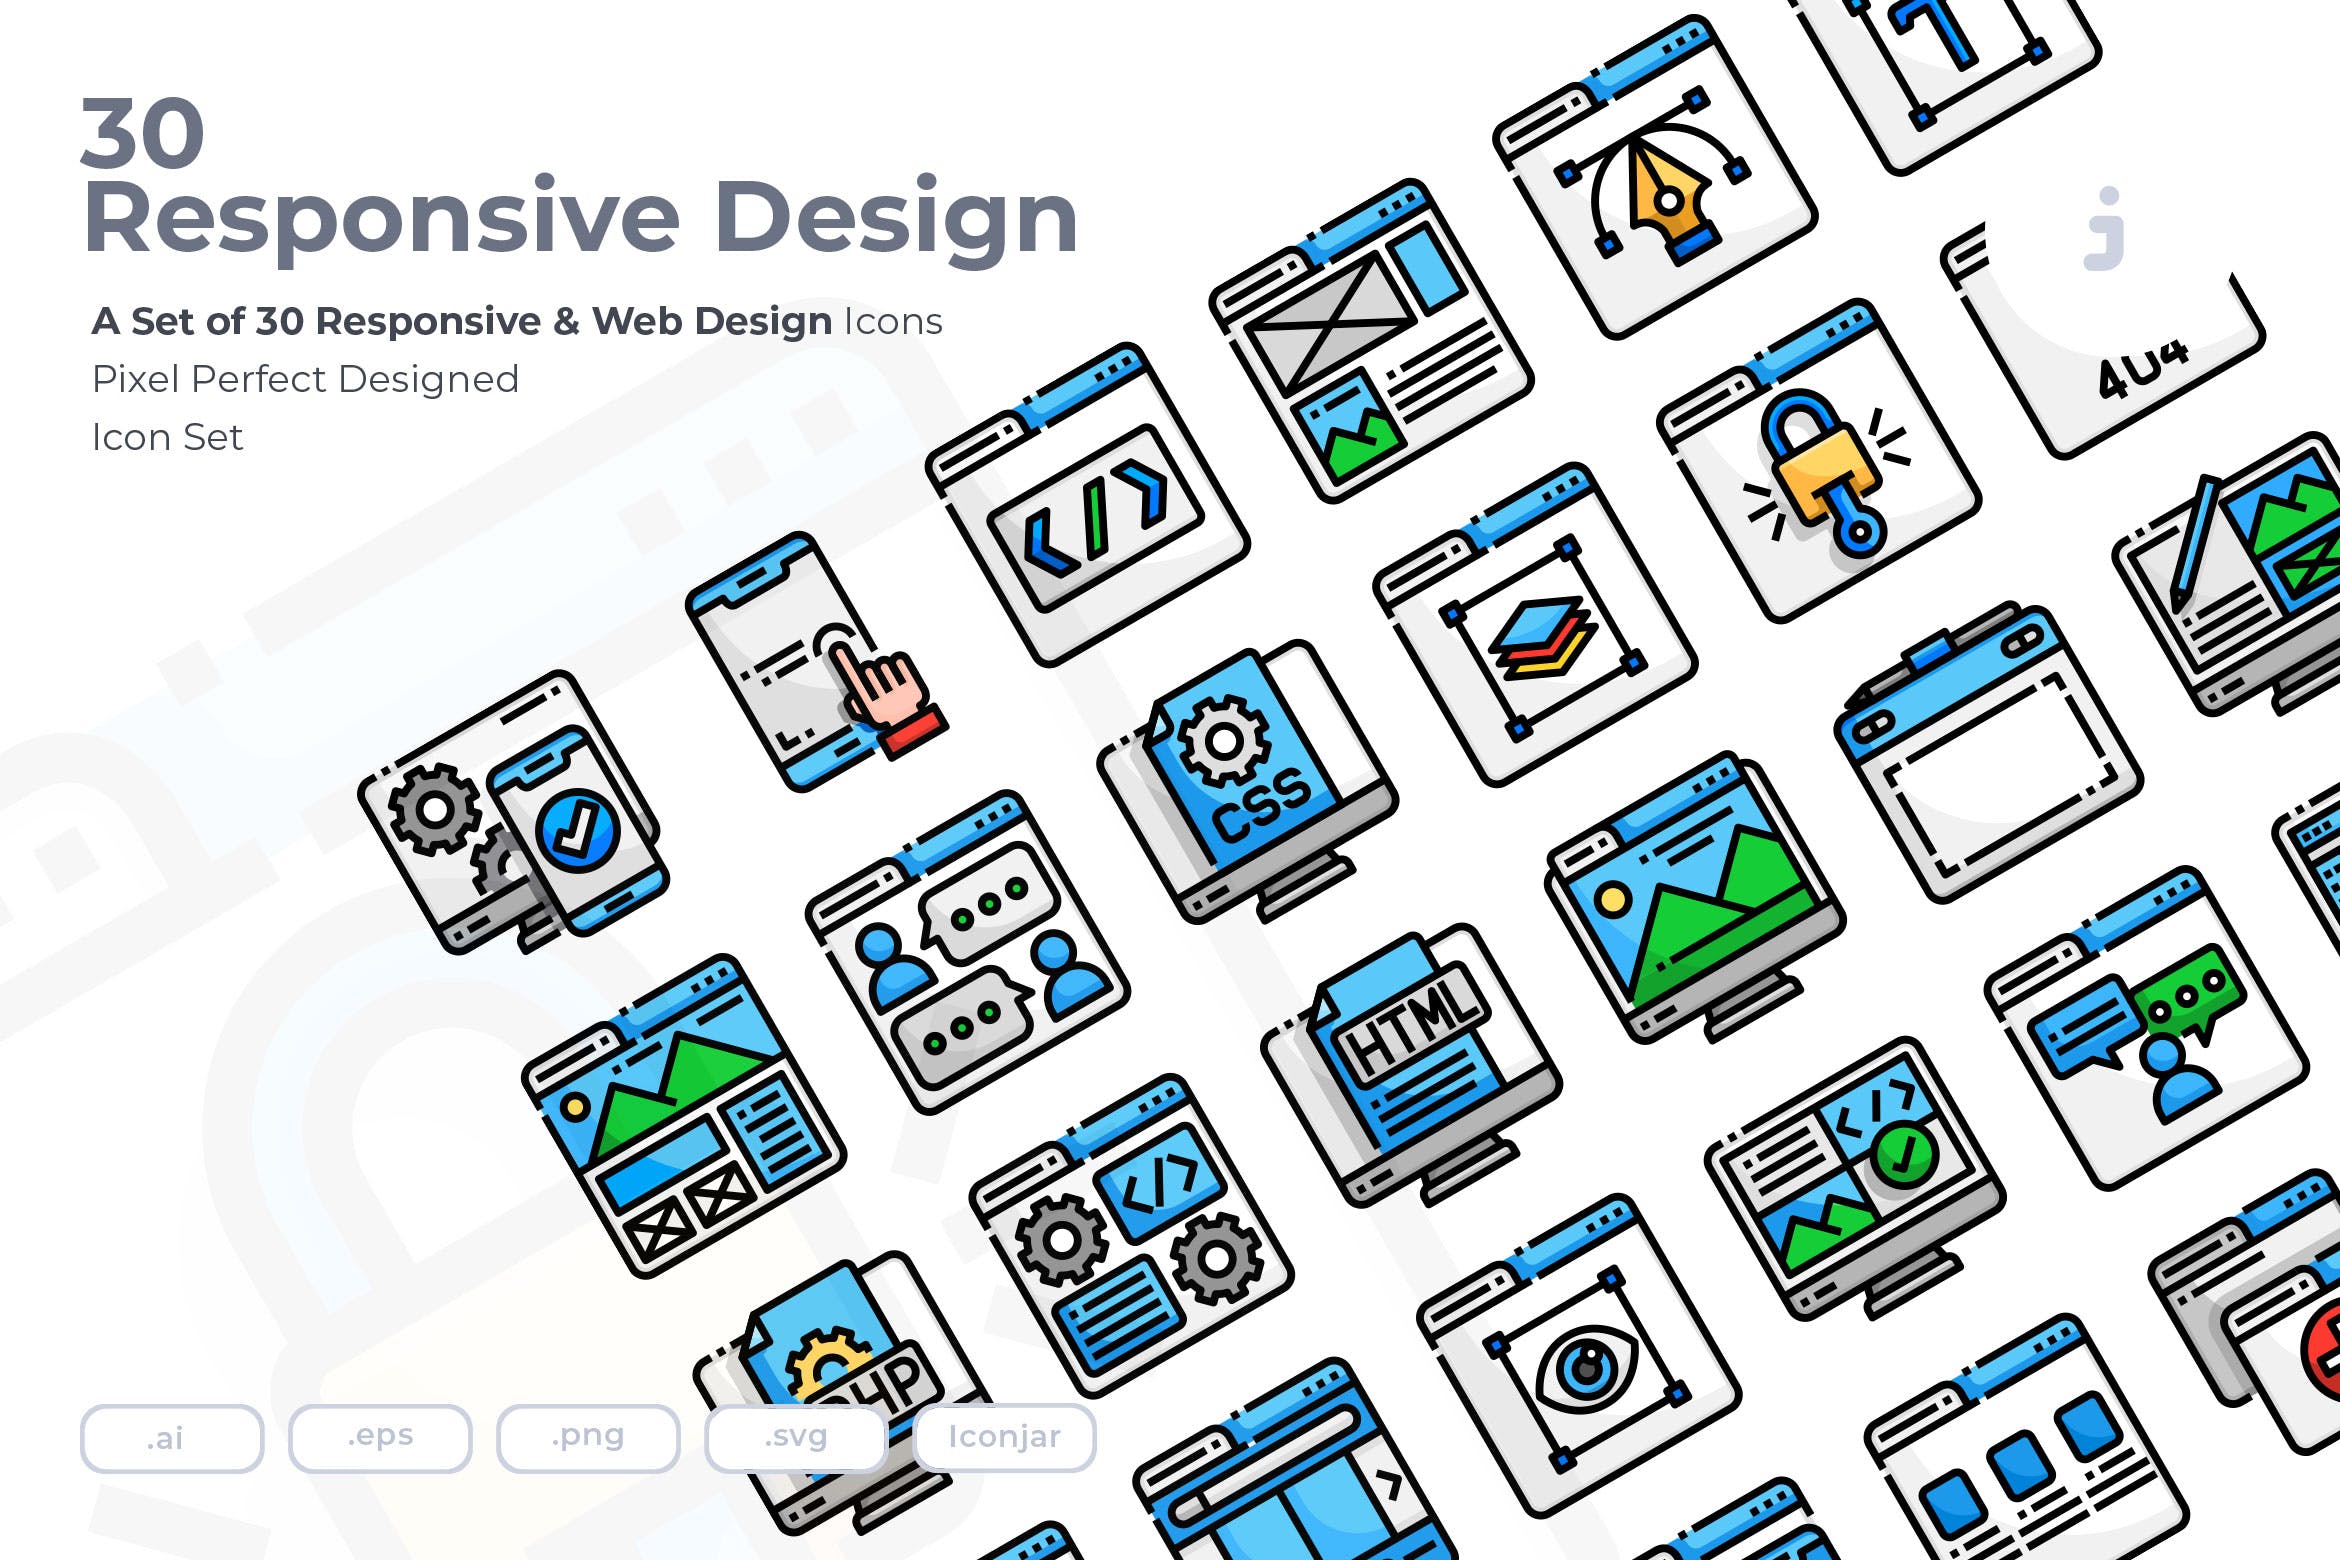 30枚彩色响应式网站设计矢量素材库精选图标 30 Responsive & Web Design Icons插图